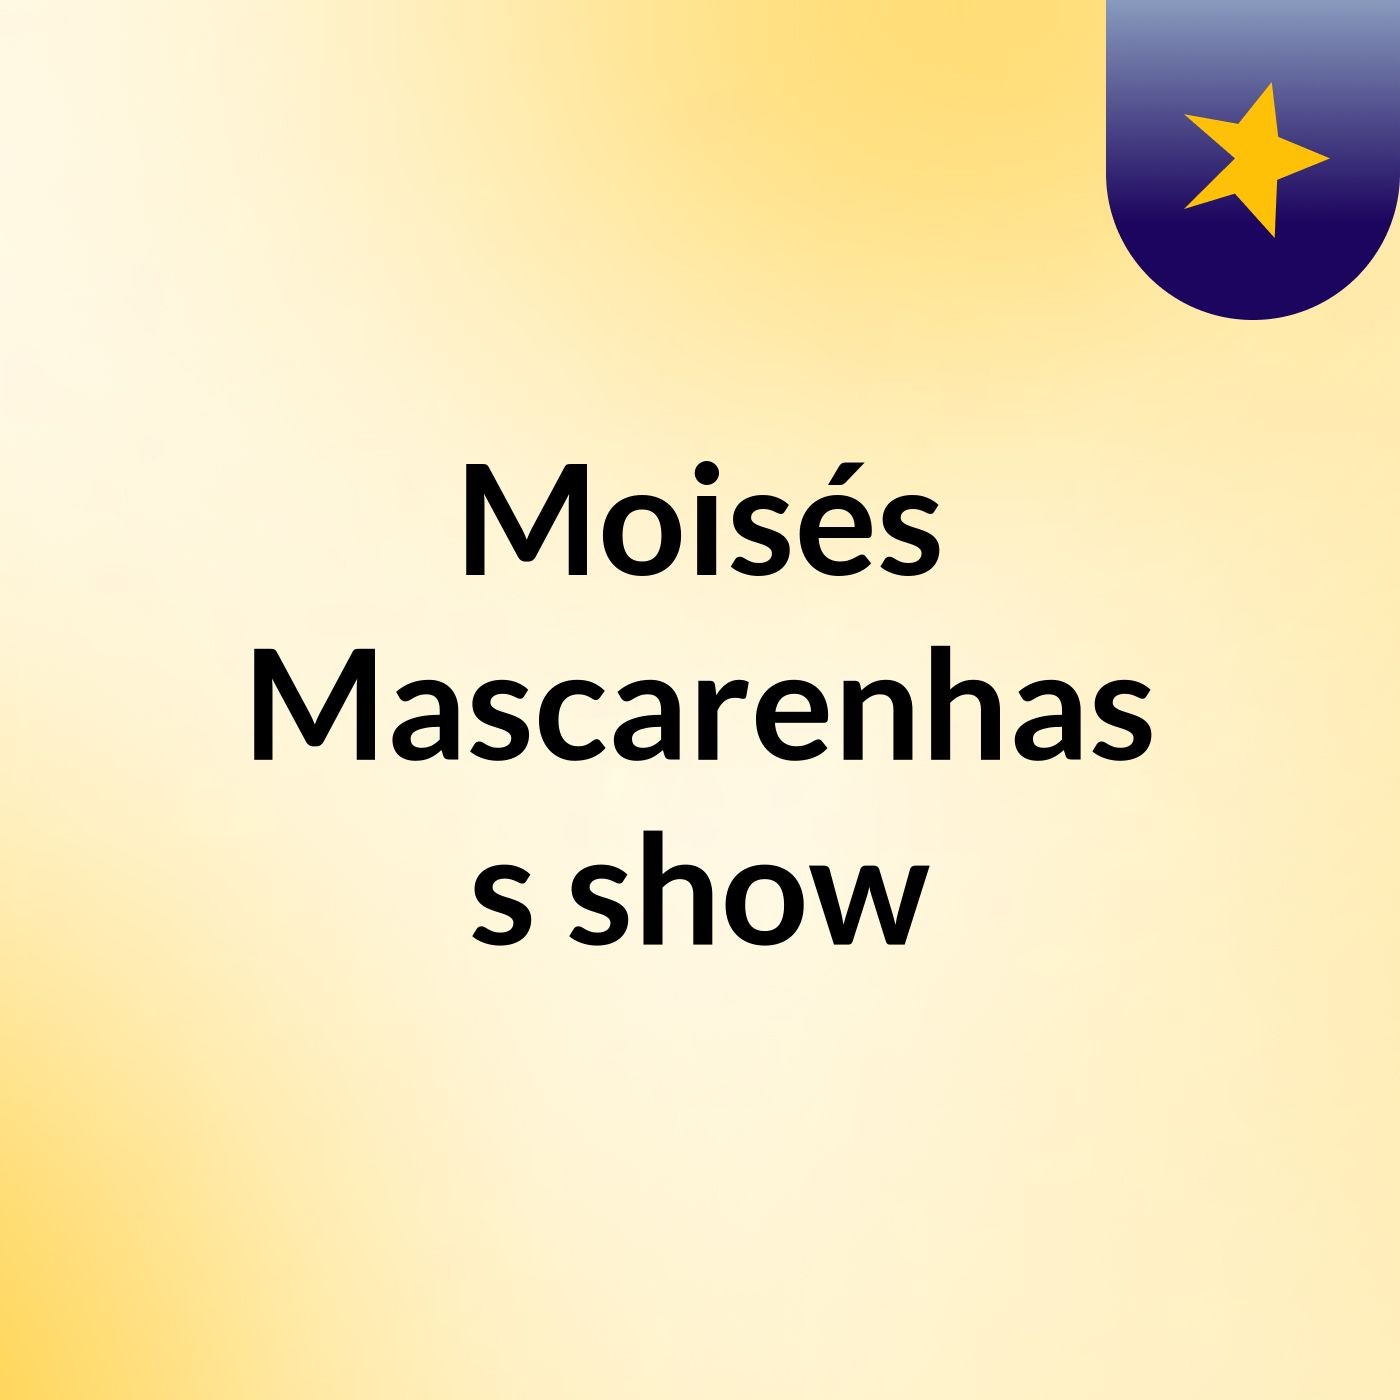 Moisés Mascarenhas's show